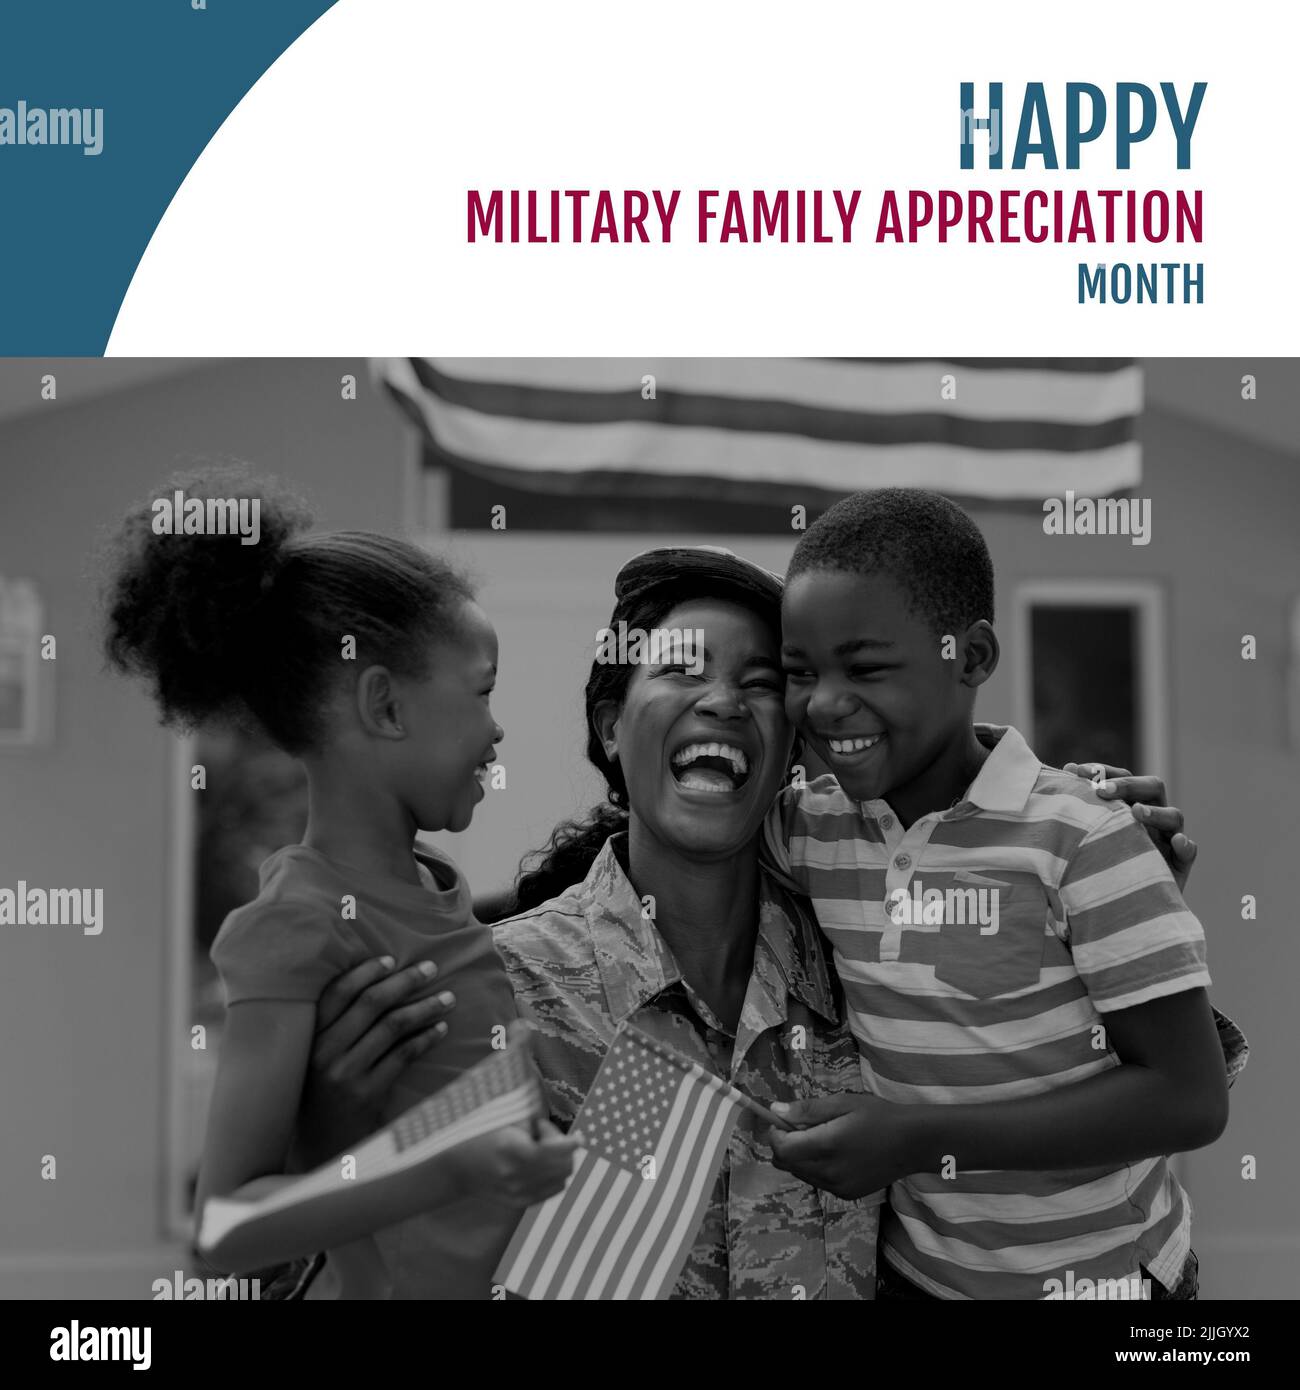 Image du mois de l'appréciation de la famille militaire par rapport à la mère et aux enfants d'un soldat afro-américain heureux Banque D'Images